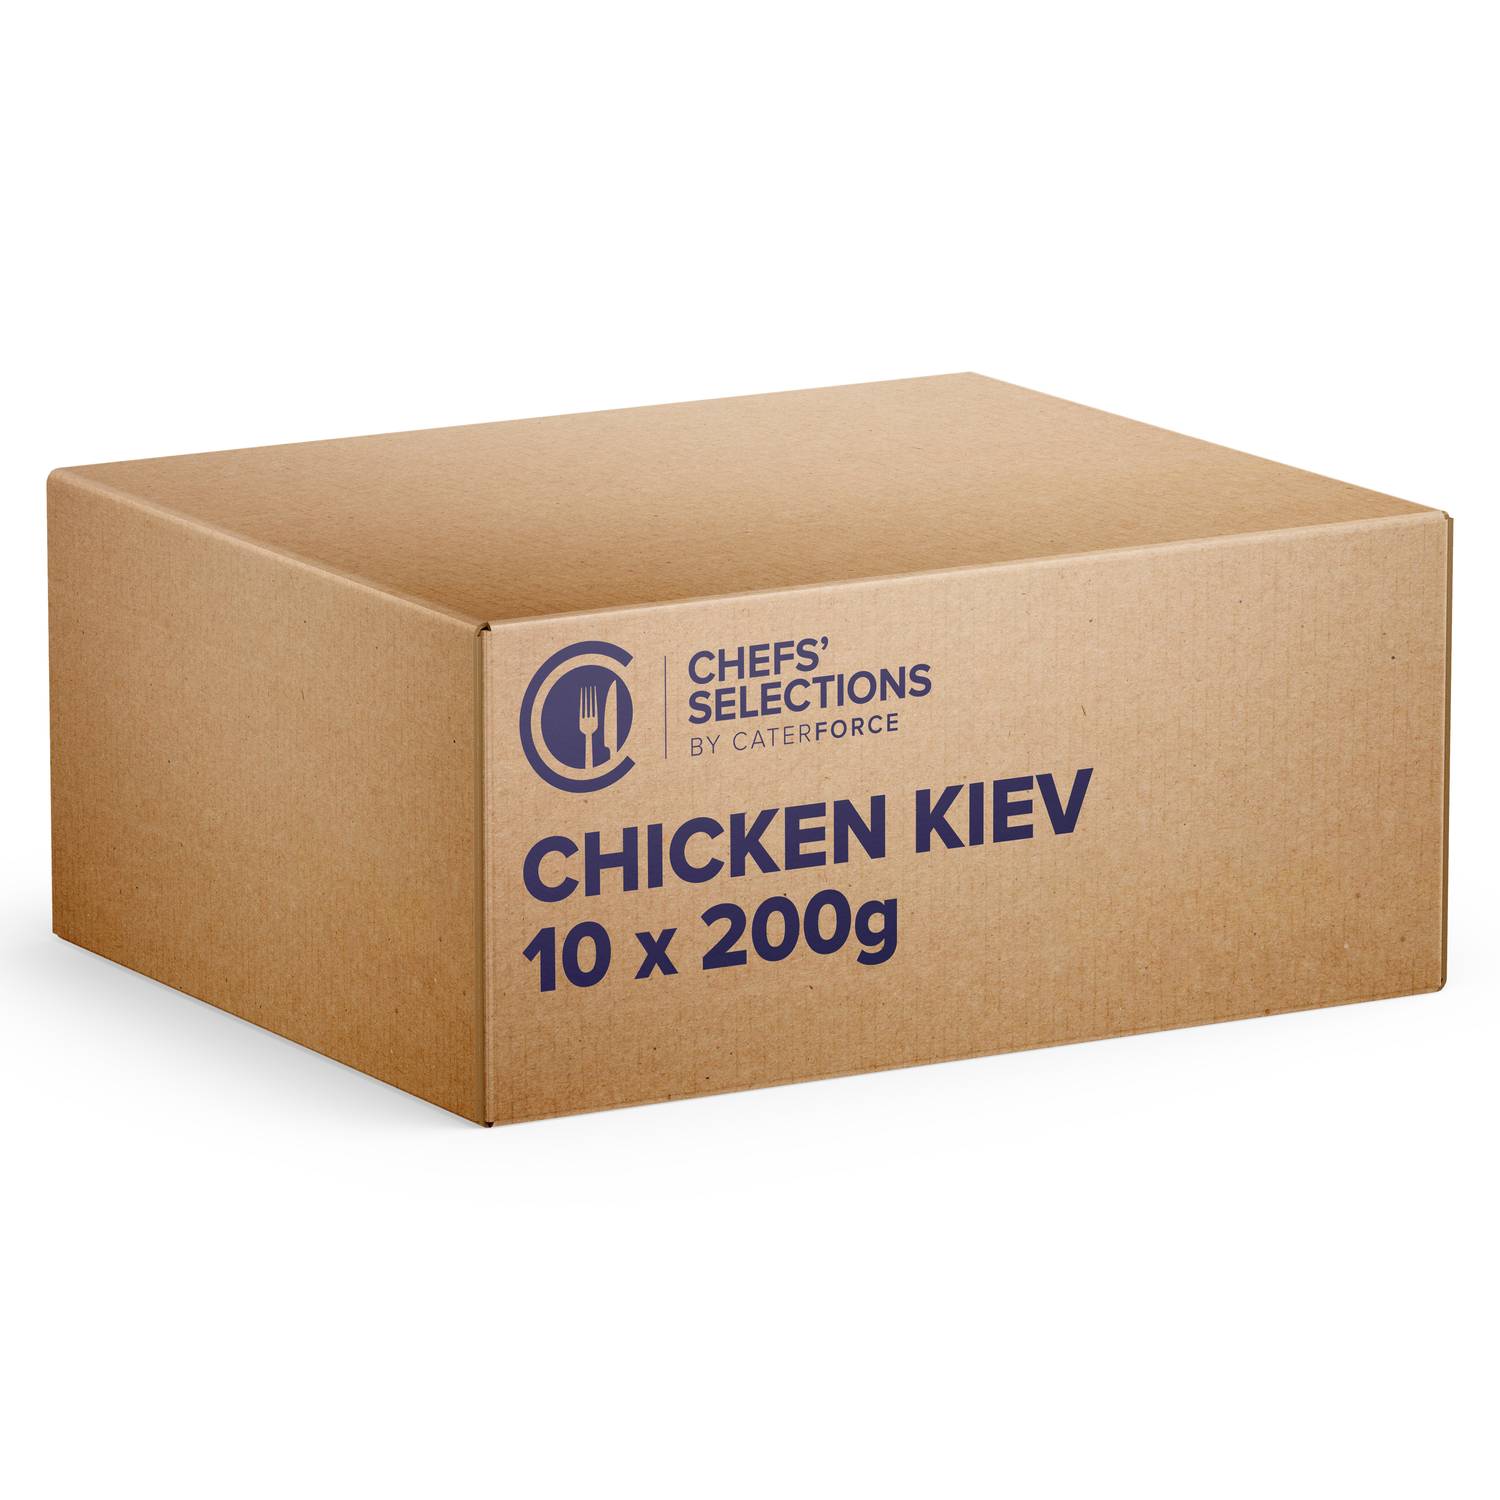 Chefs’ Selections Chicken Kiev (10 x 200g)